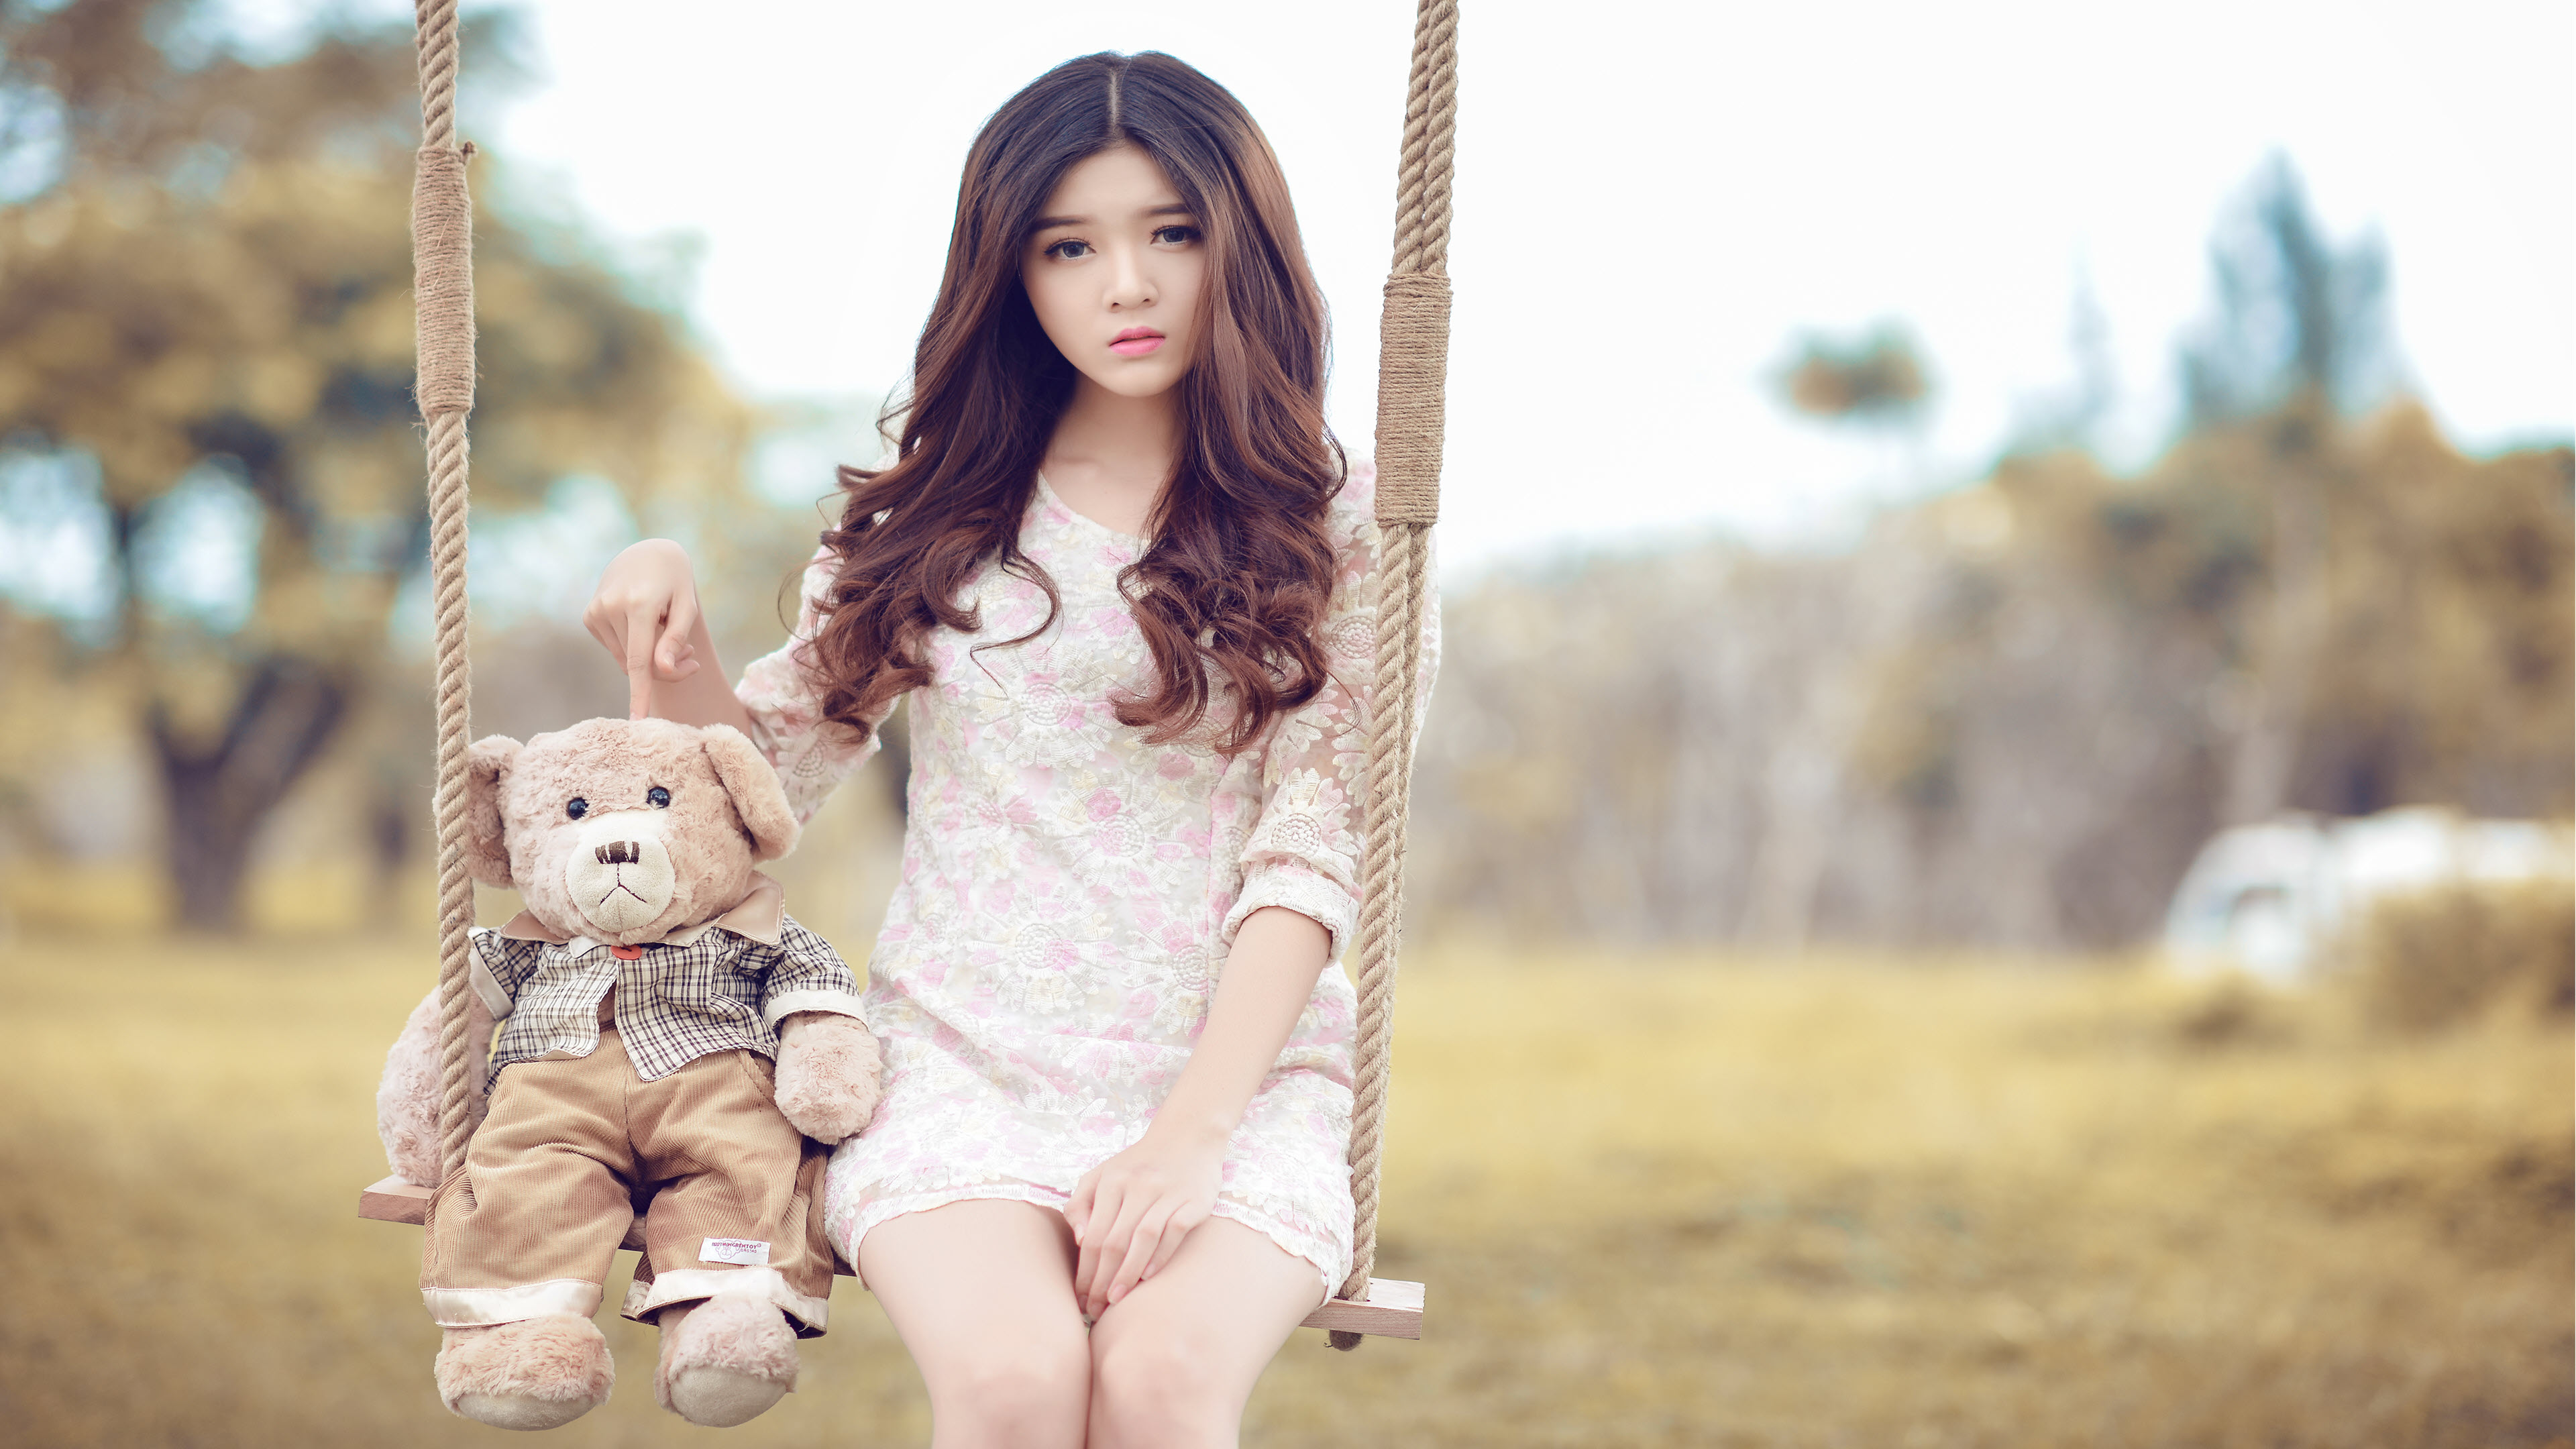 1001+ Ảnh Gái Xinh - Ảnh Gái Đẹp Làm Hình Nền Điện Thoại, Máy Tính |  Beautiful chinese girl, Korean girl photo, Cute japanese girl